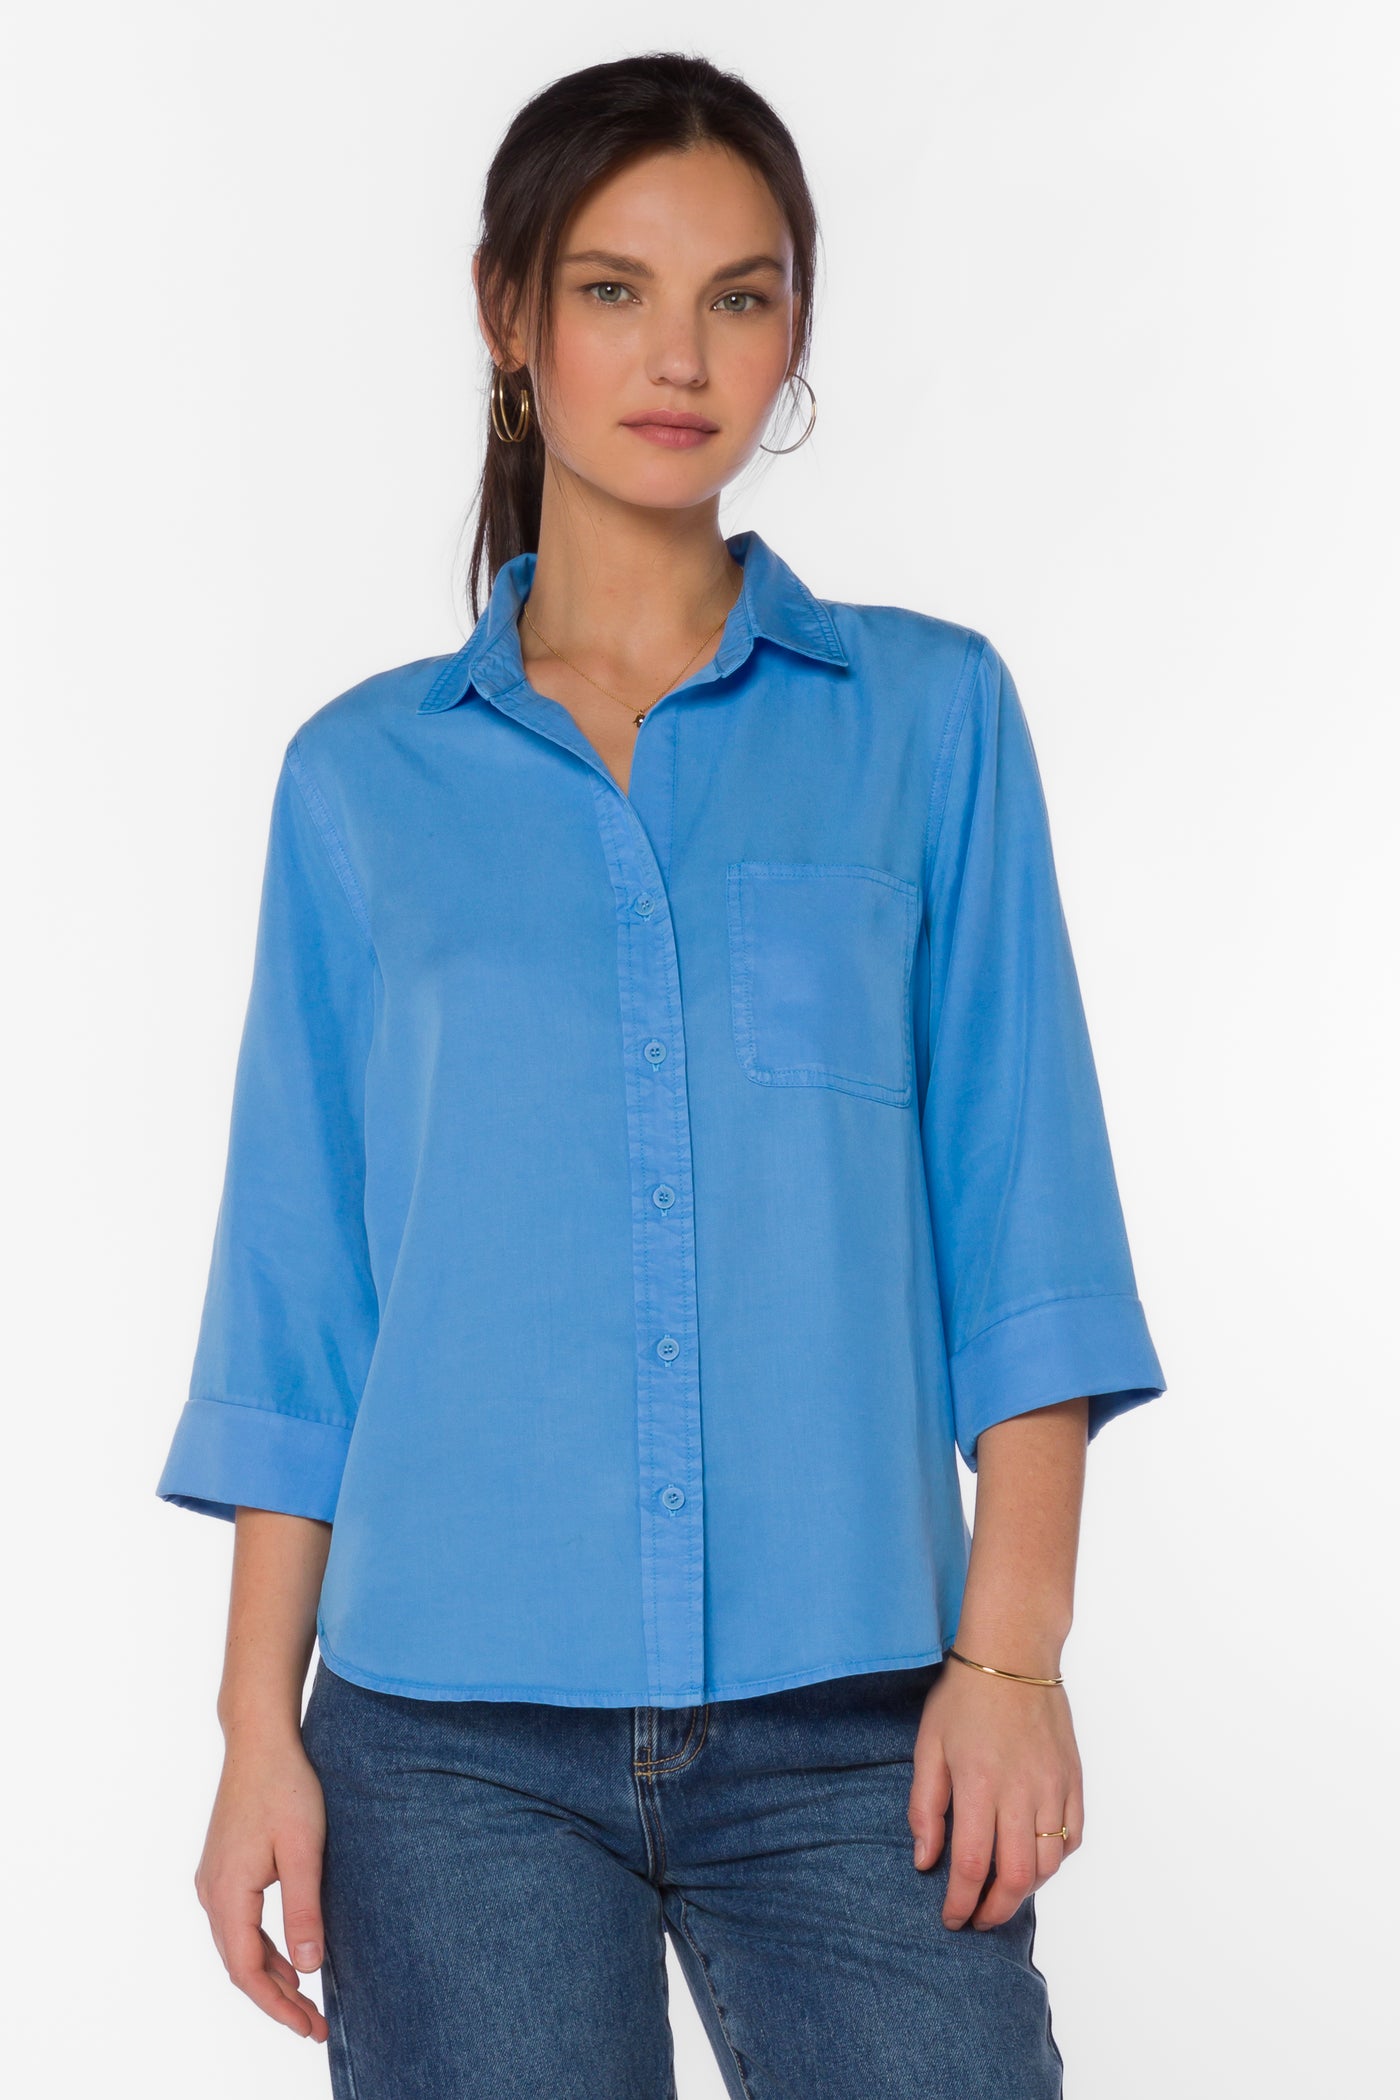 Blake Polar Blue Shirt - Tops - Velvet Heart Clothing